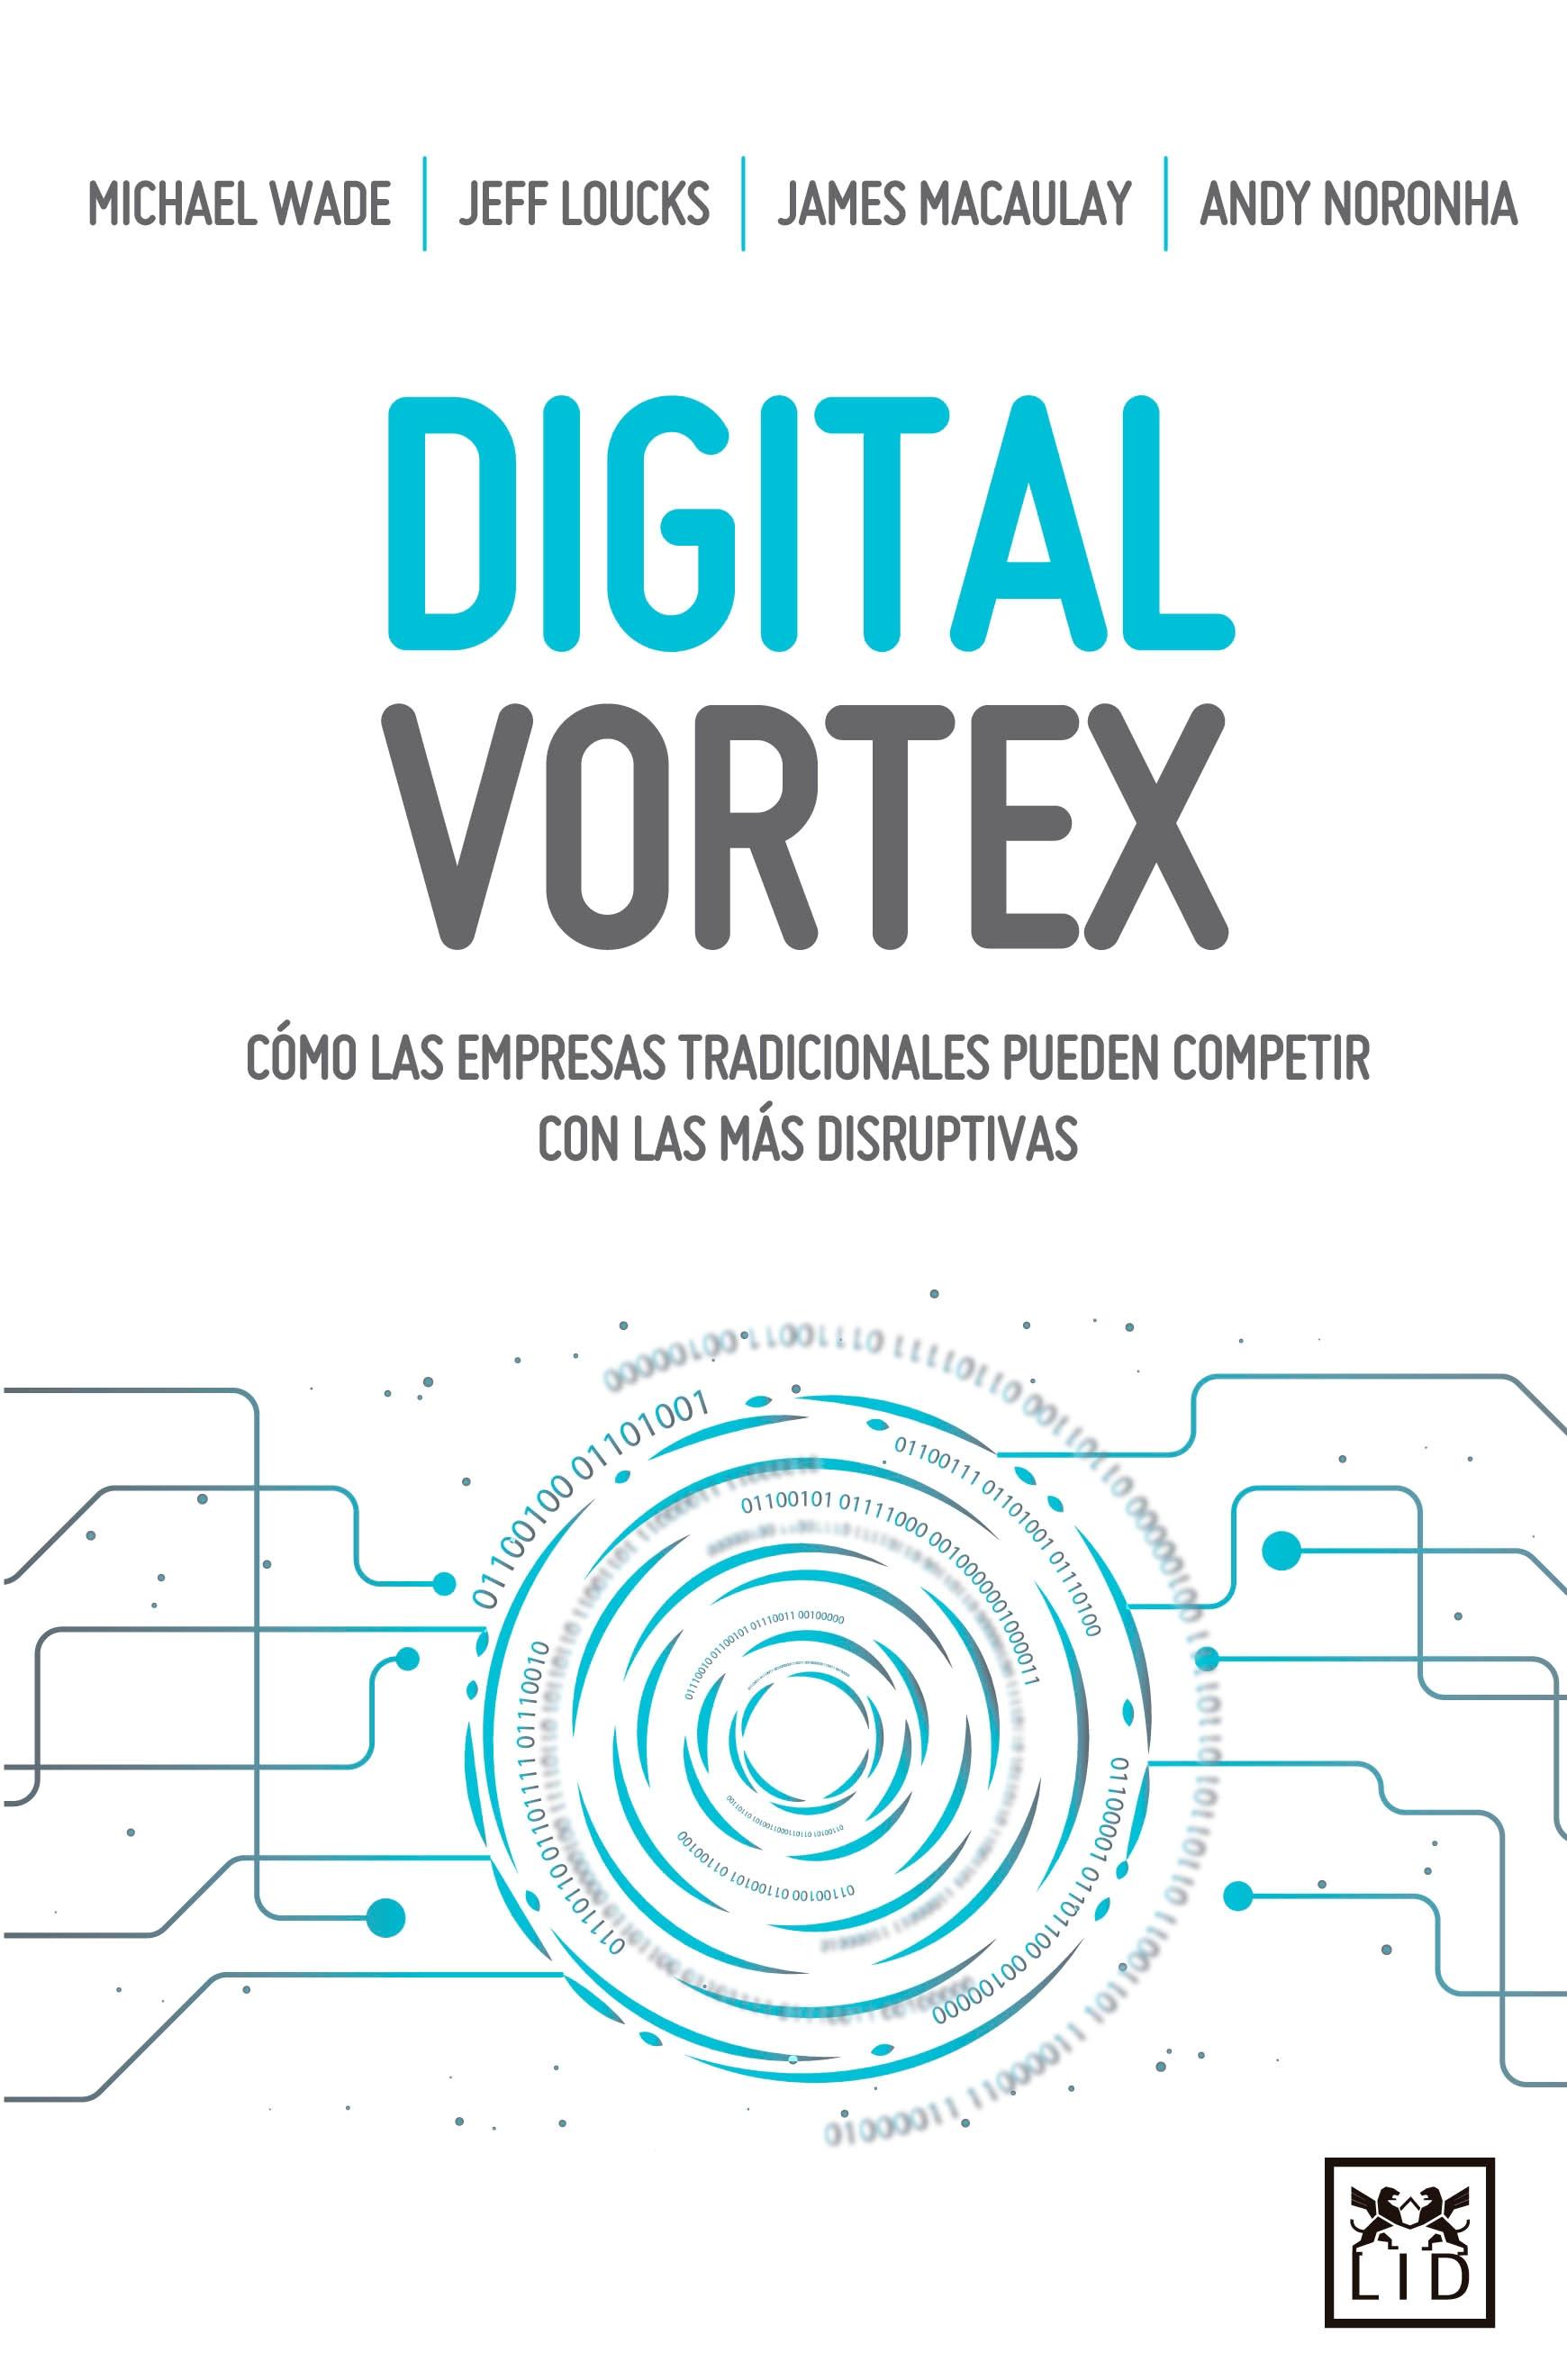 Digital Wortex "Cómo las empresas tradicionales pueden competir con las más disruptivas"